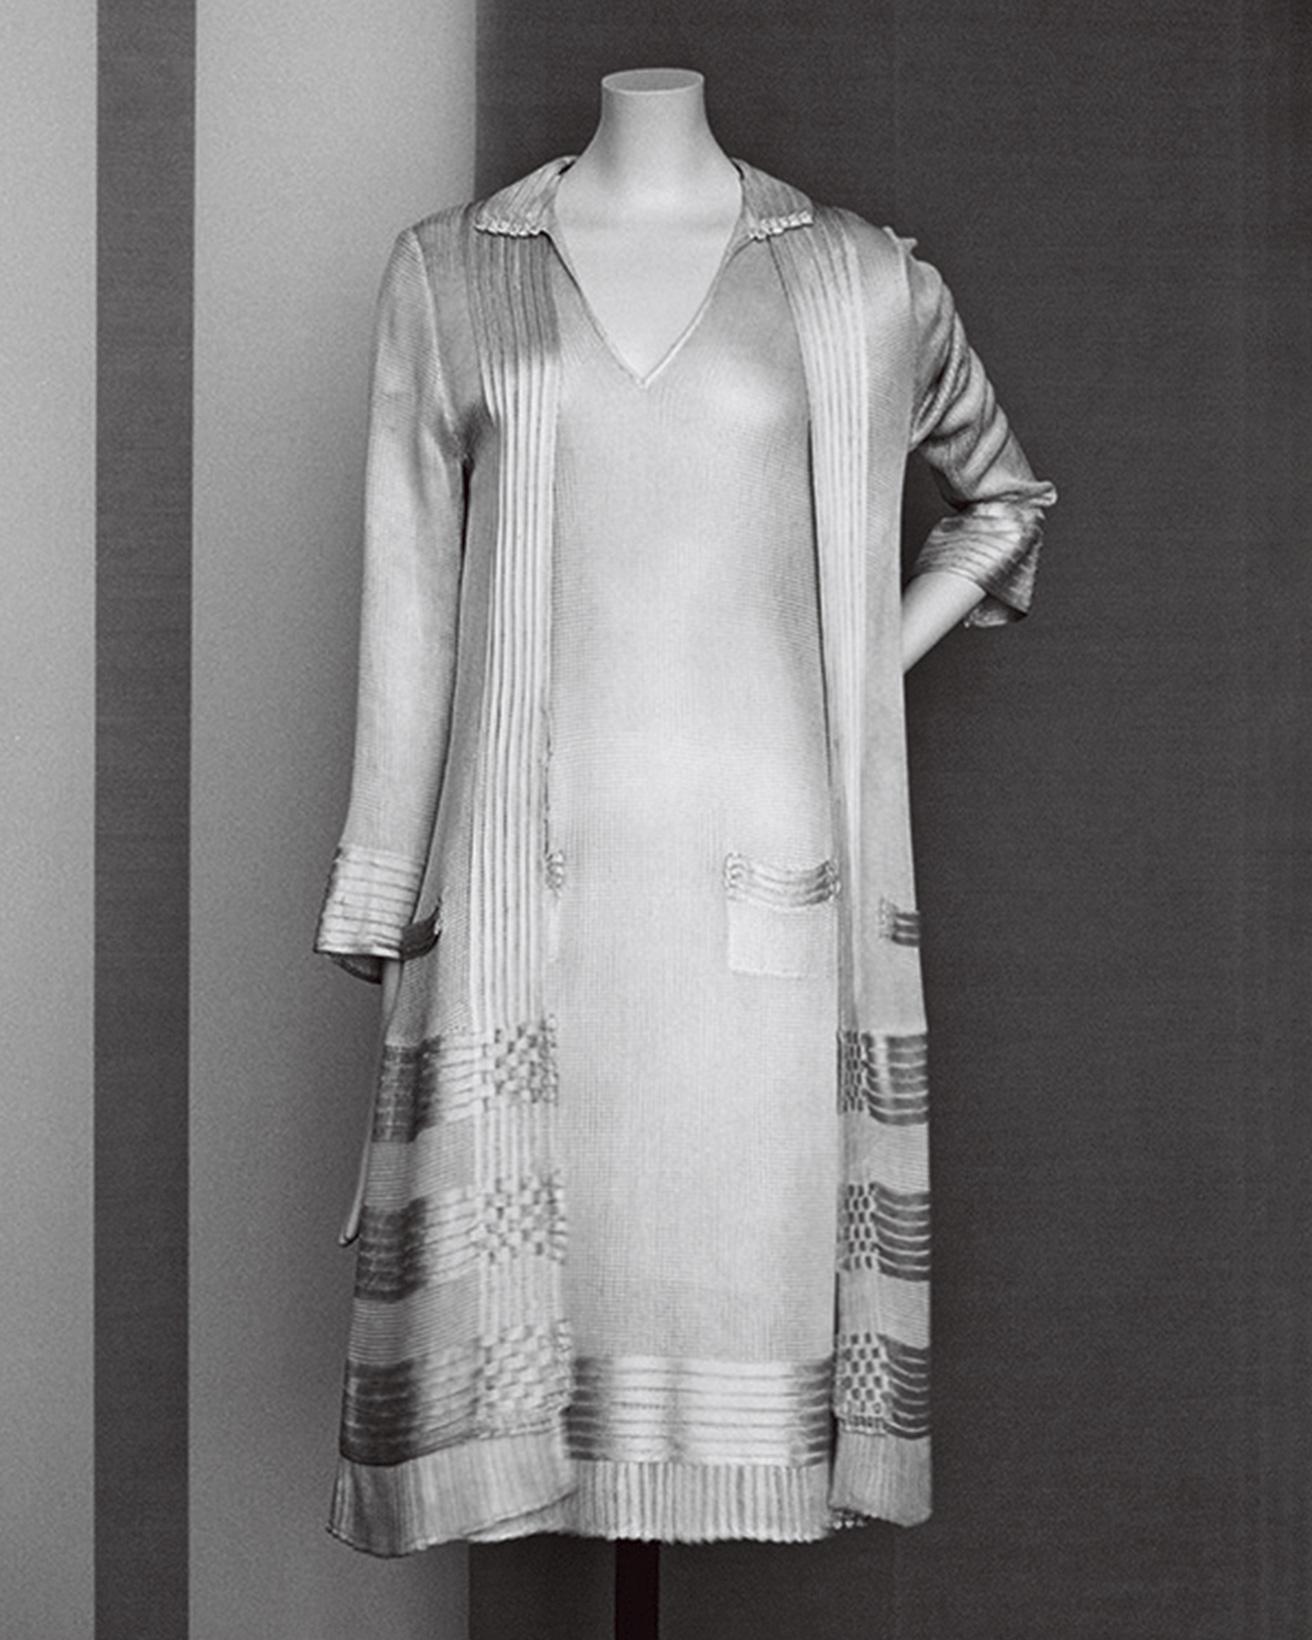 ［1922-28］19世紀的なファッションへの抵抗
ドレスとジャケットのアンサンブル。シンプルで動きやすく、機能的でエレガント。絹ジャージー。（パリ、パトリモアンヌ・シャネル）